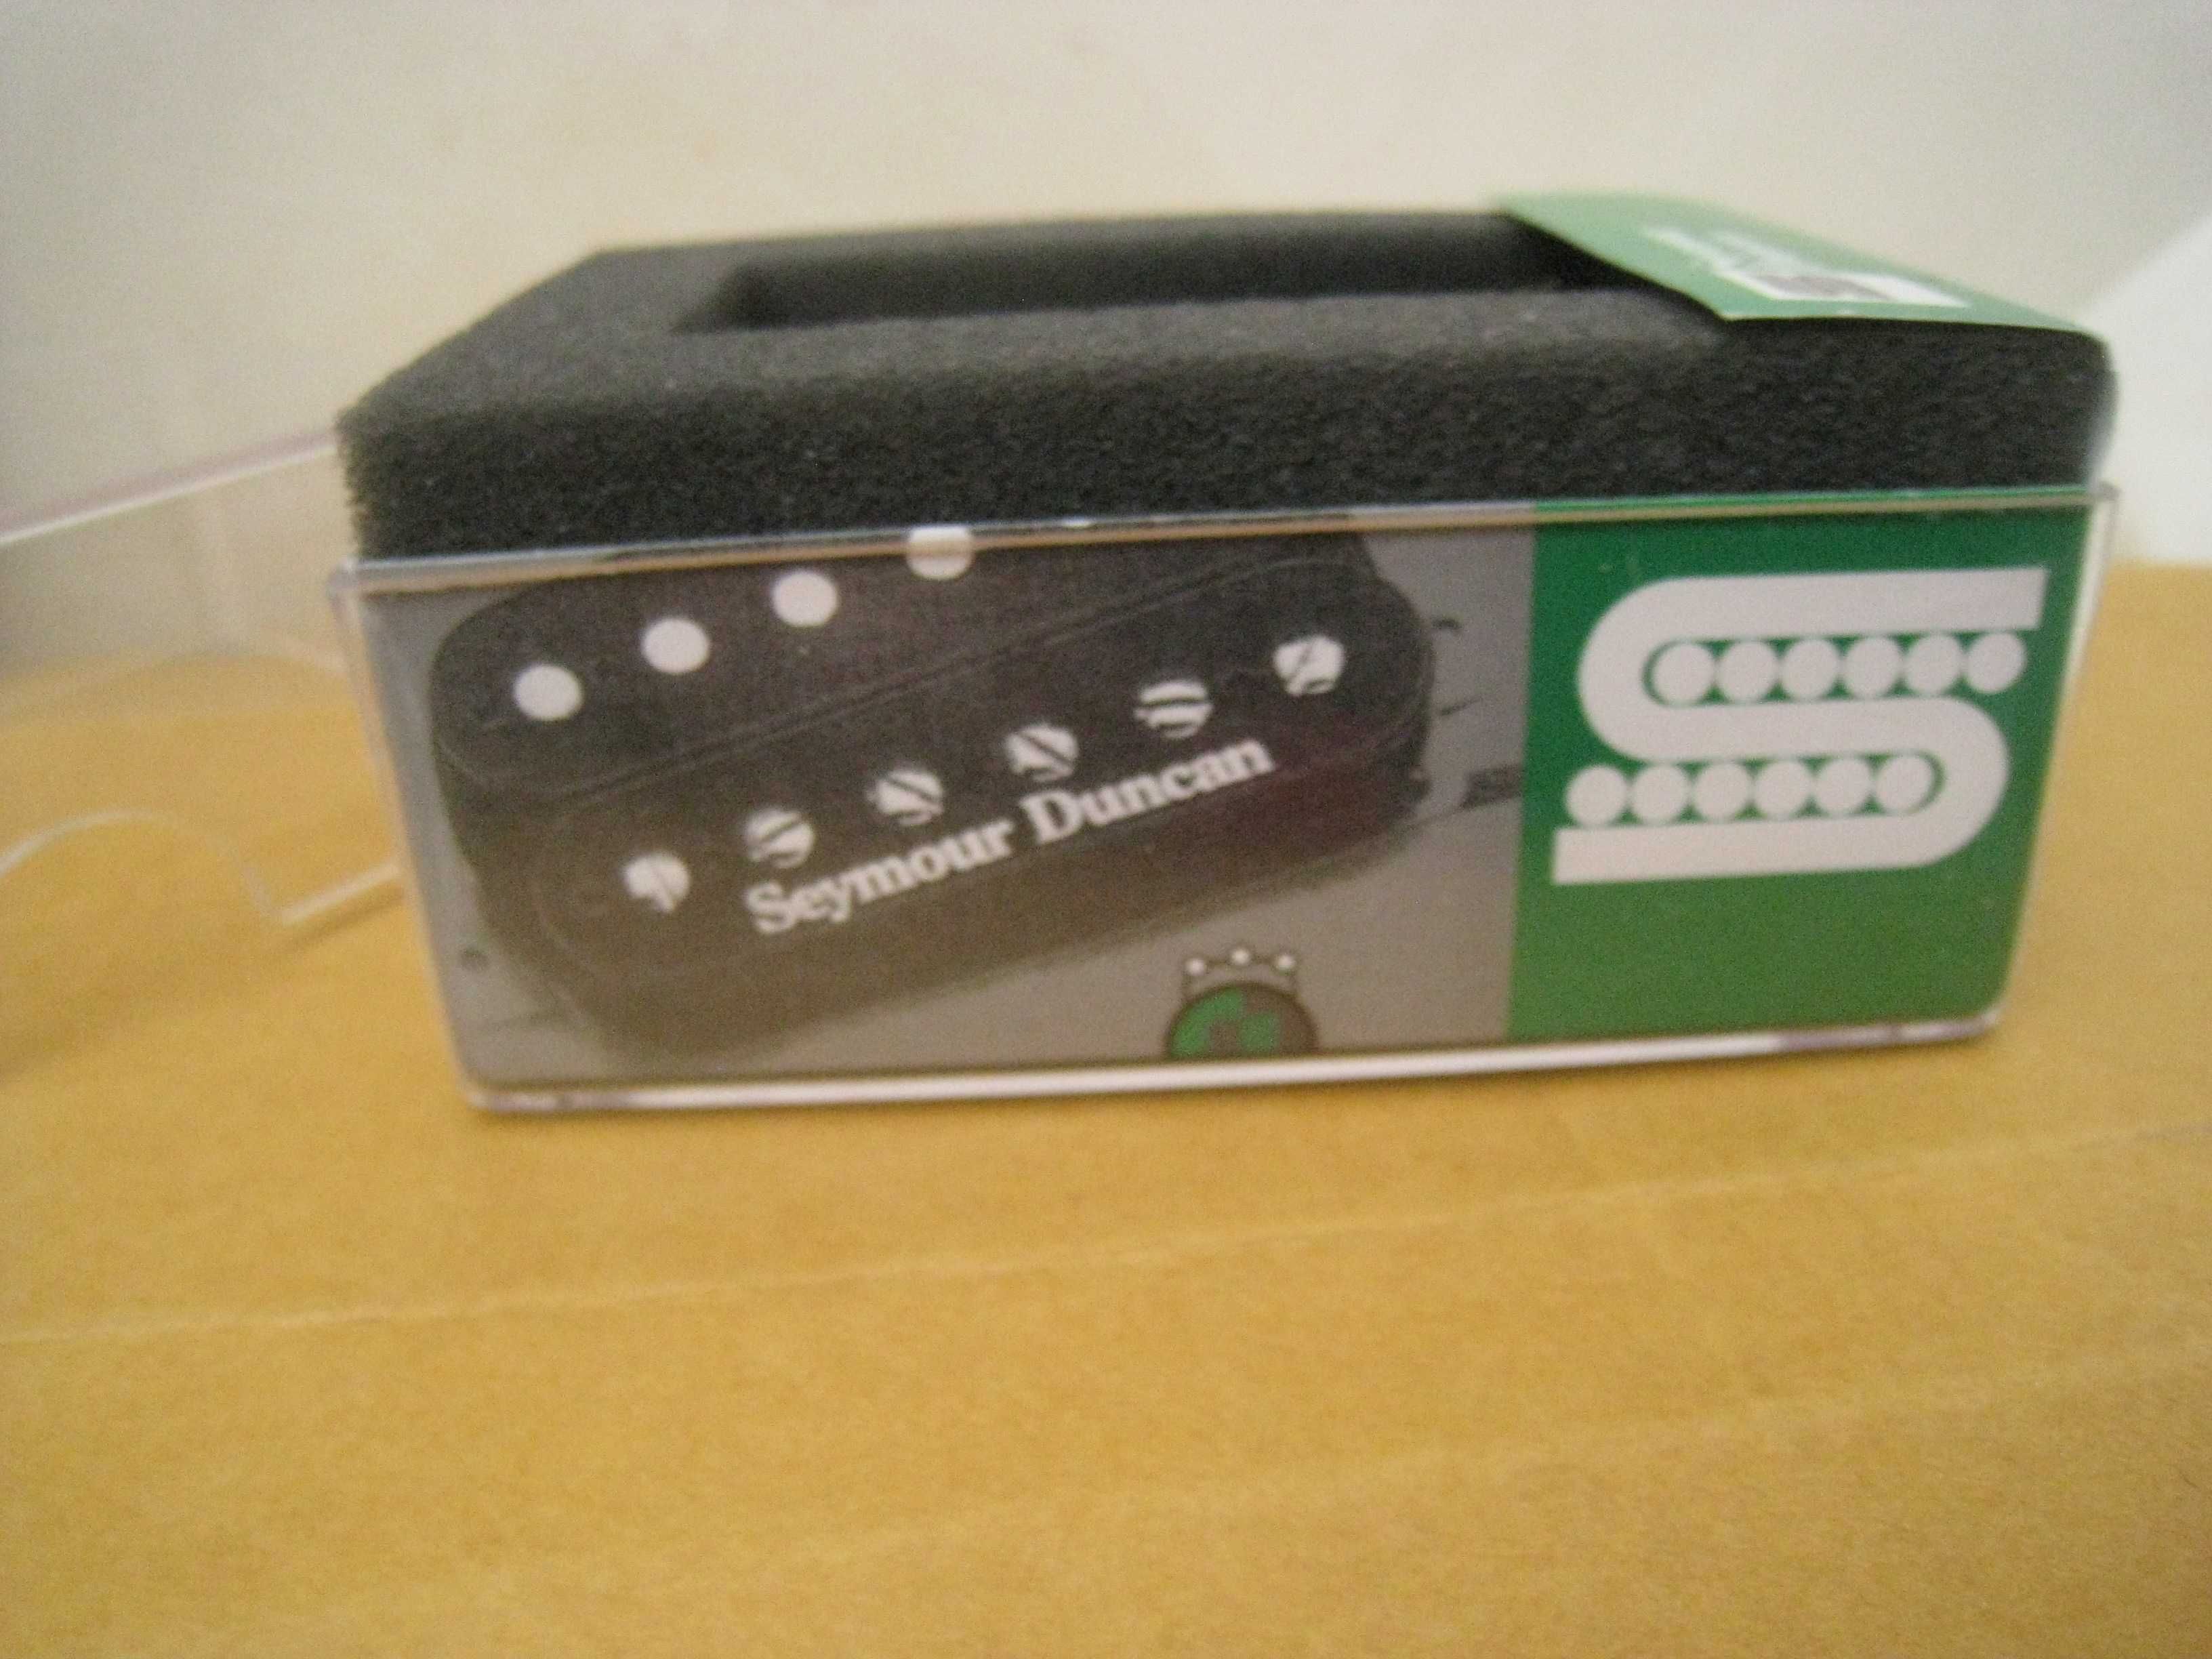 коробка от гитарного датчика, Seymour Duncan